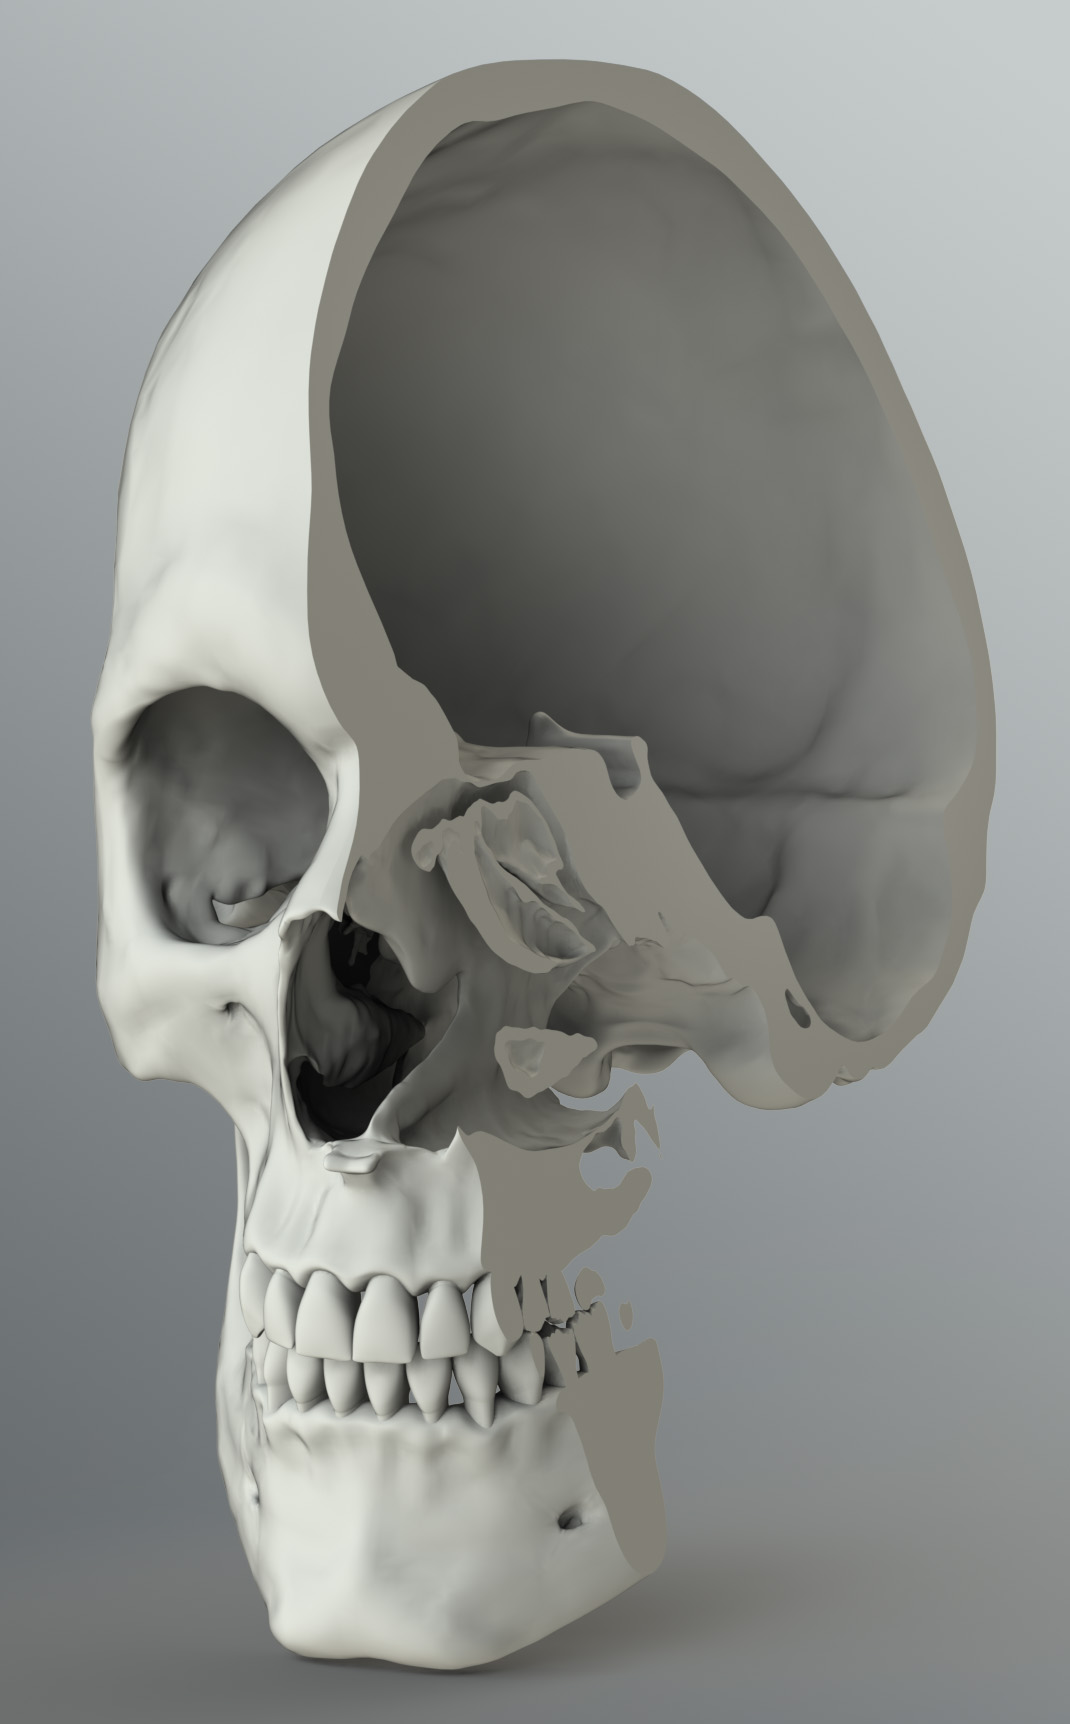 Solid 3D Male Skeleton